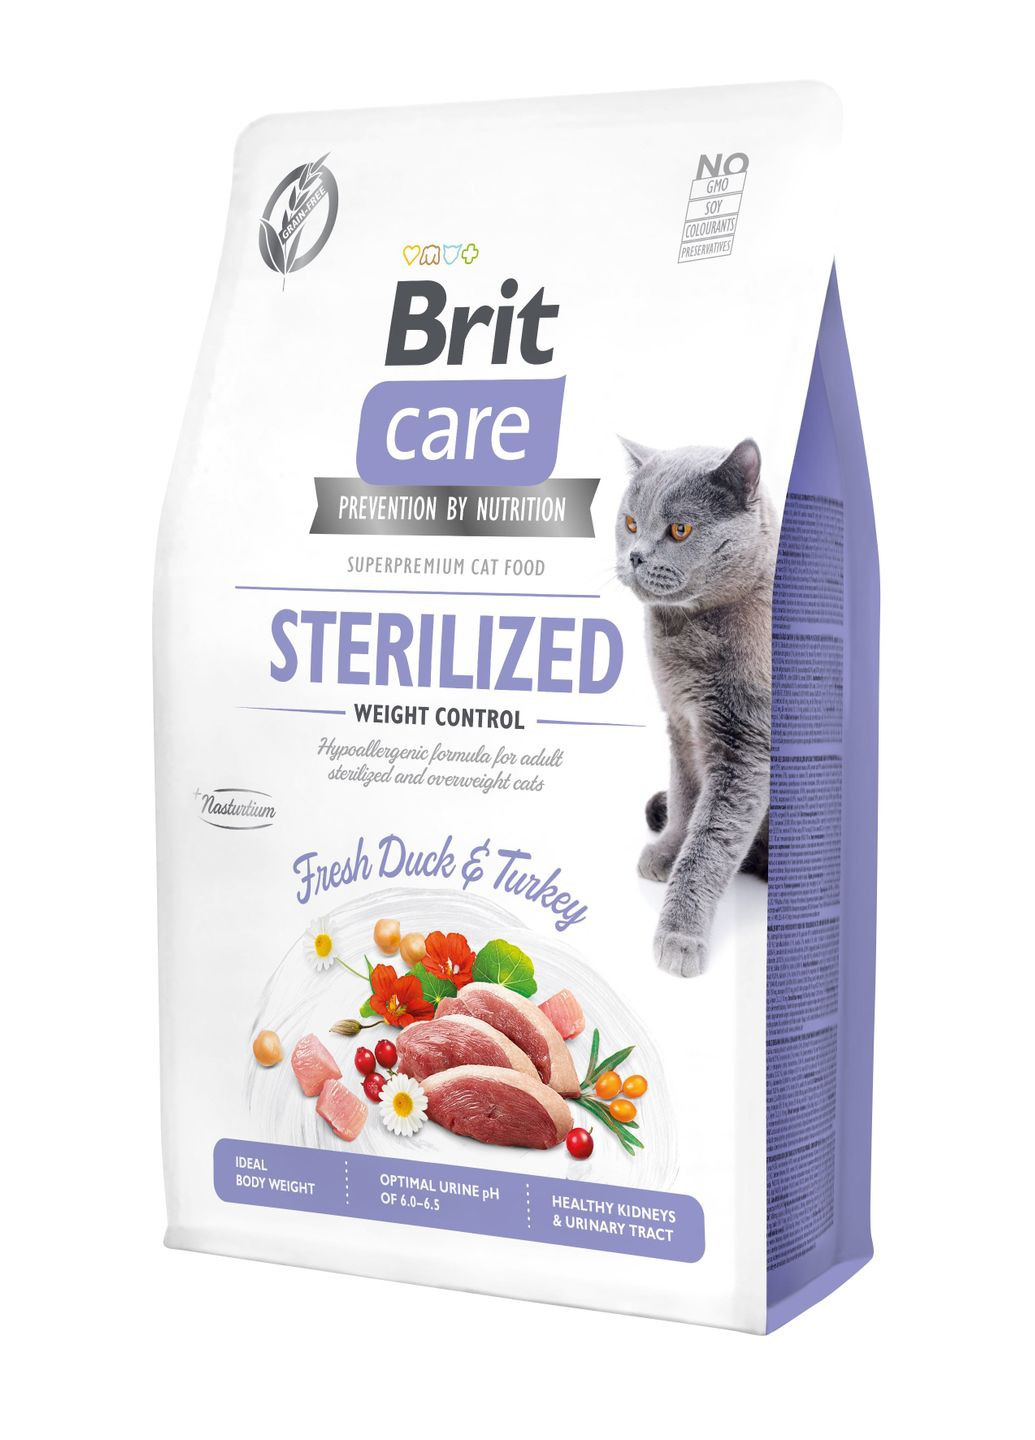 Сухой корм для стерилизованных кошек и кошек с избыточным весом Cat GF Sterilized Weight Control с Brit Care (279561280)